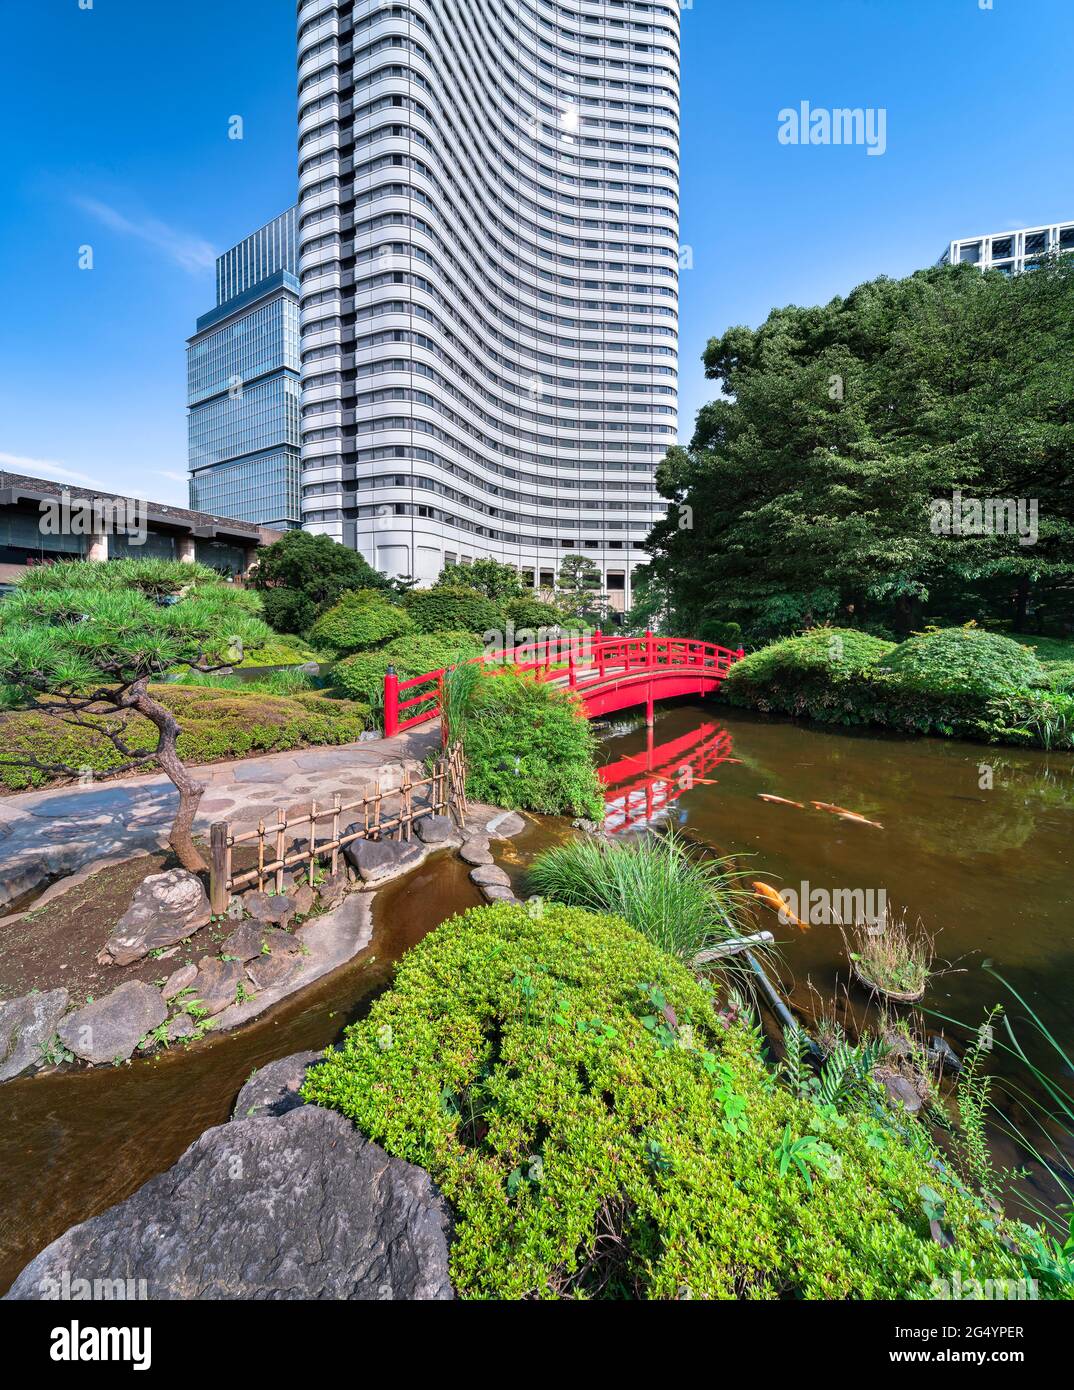 tokyo, giappone - luglio 24 2020: Carpe giapponesi che nuotano nello stagno Seisen-ike dell'Hotel New Otani Giardino Giapponese attraversato da un tradizionale Taikob rosso Foto Stock